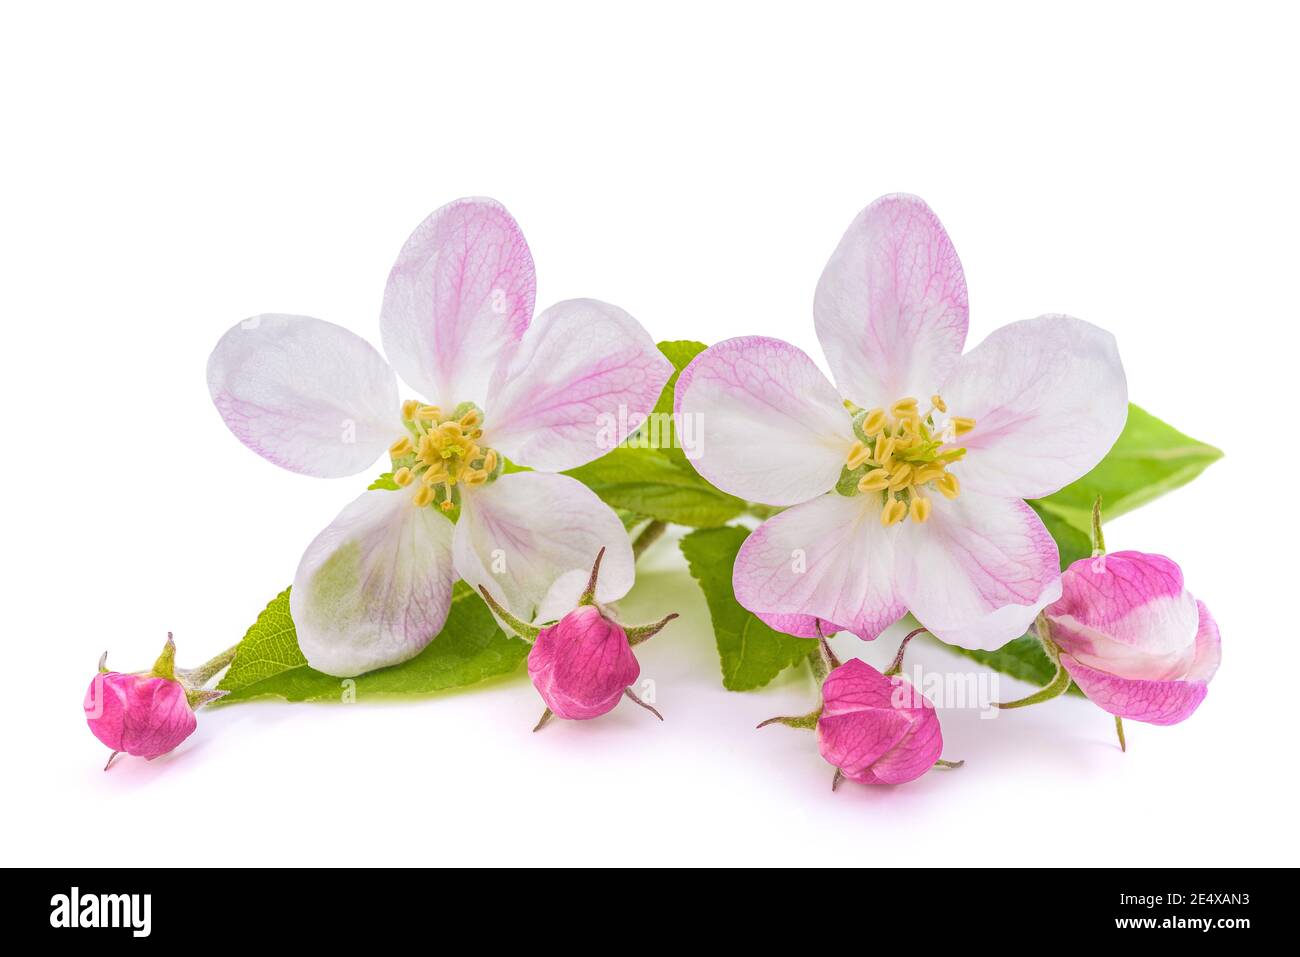 Apple fiori con boccioli isolati su sfondo bianco Foto Stock